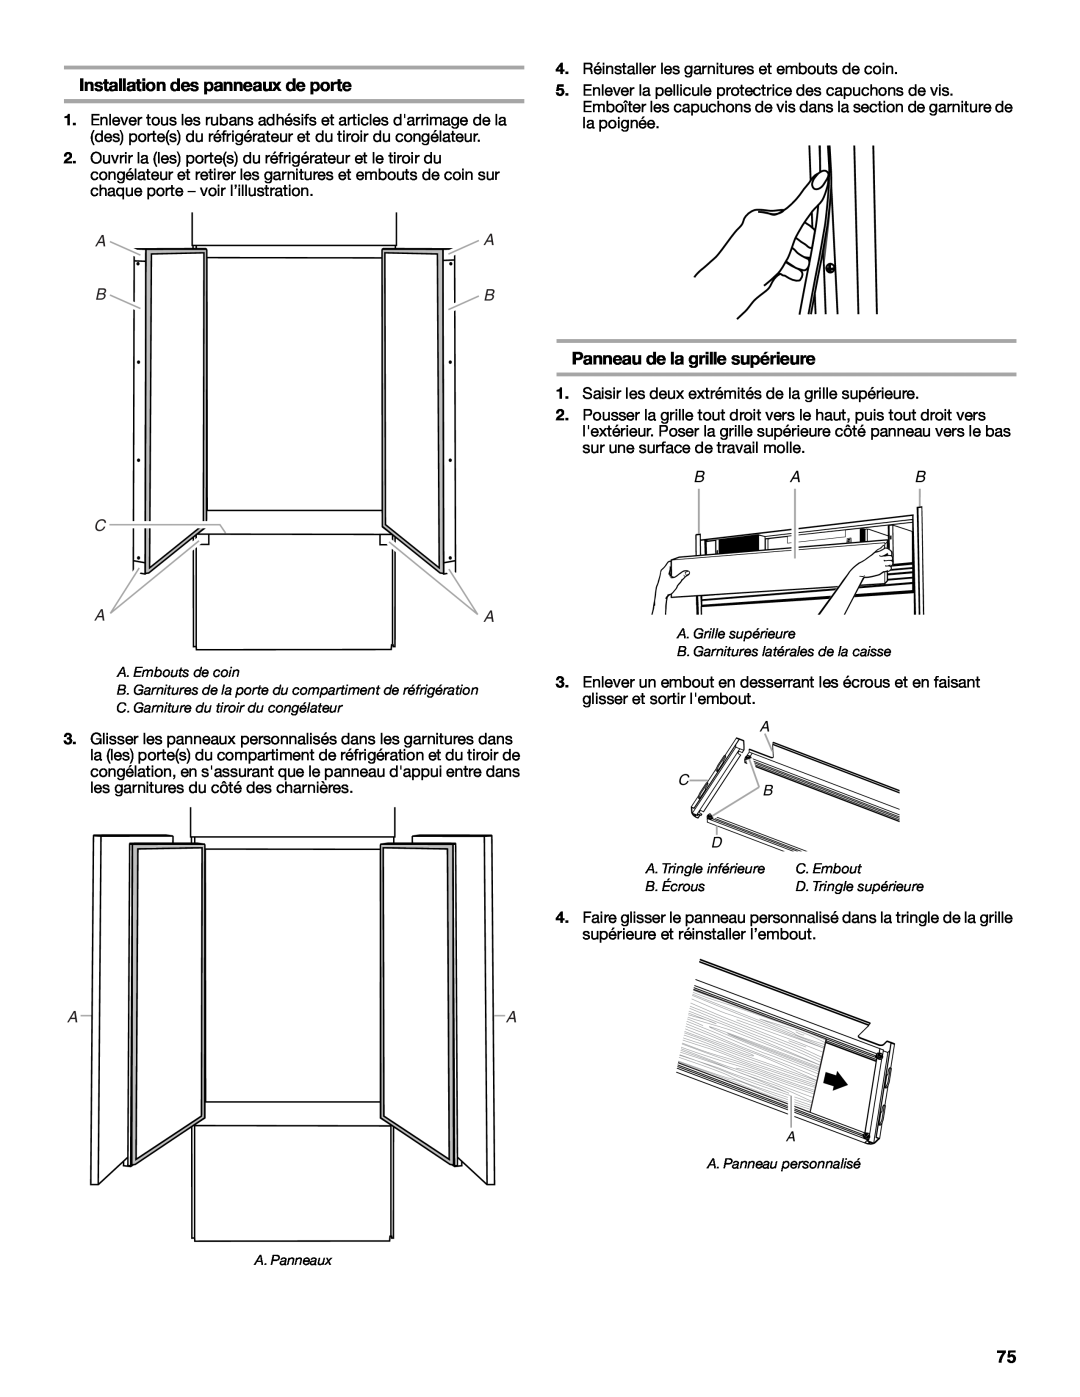 Jenn-Air W10183782A manual Installation des panneaux de porte, Panneau de la grille supérieure, A A B B C Aa 